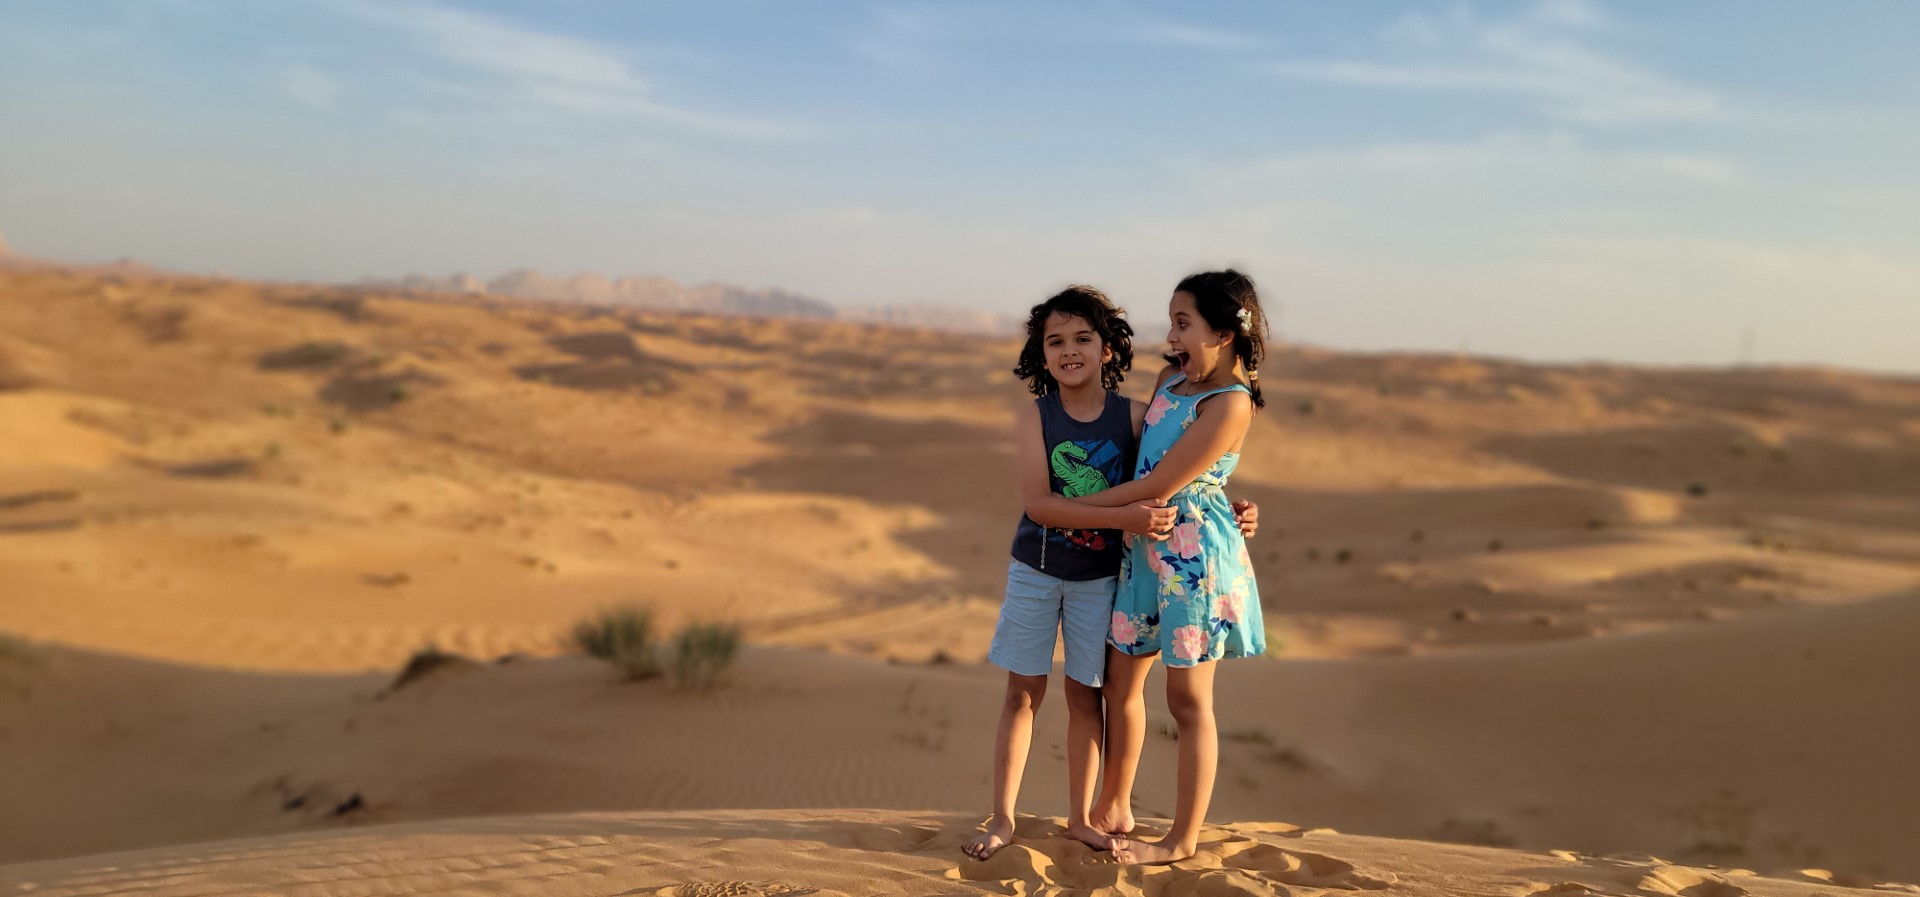 siblings hugging each other in the Arabian desert 